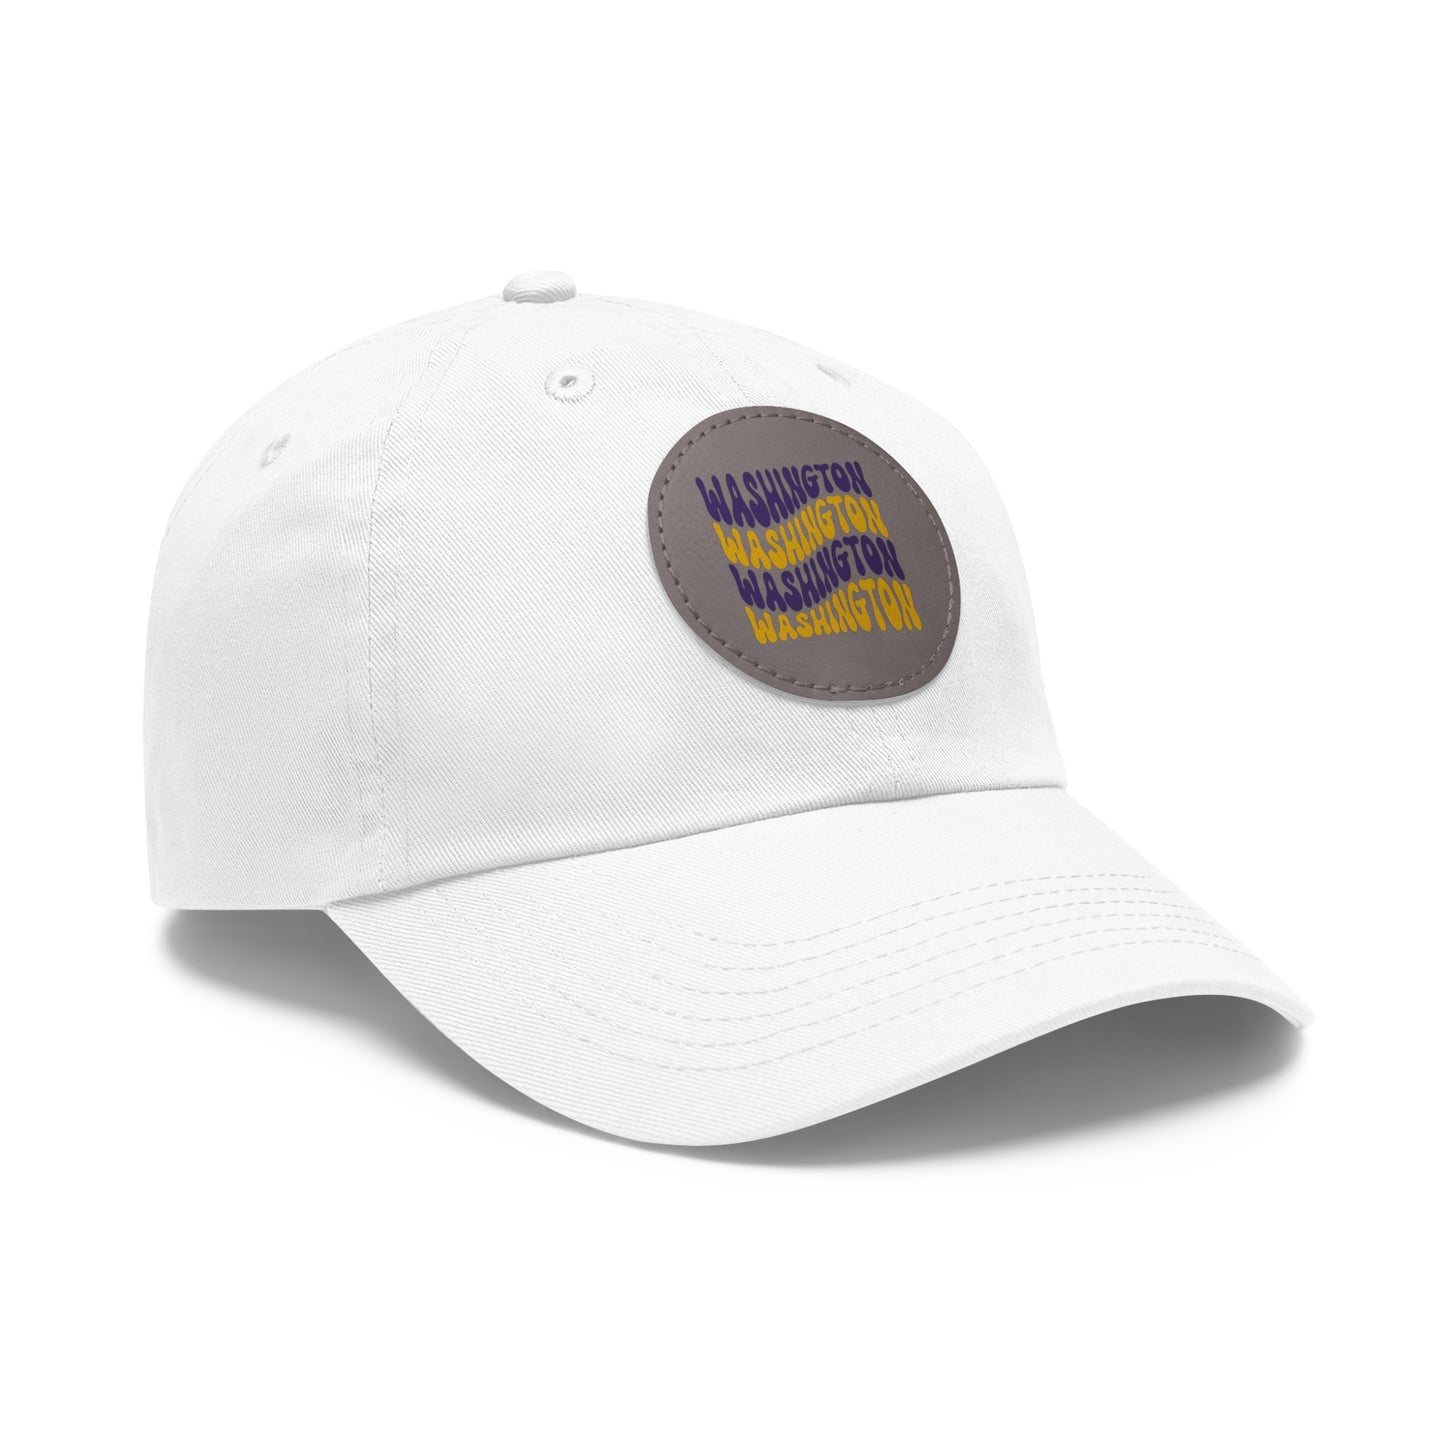 University of Washington Baseball Hat